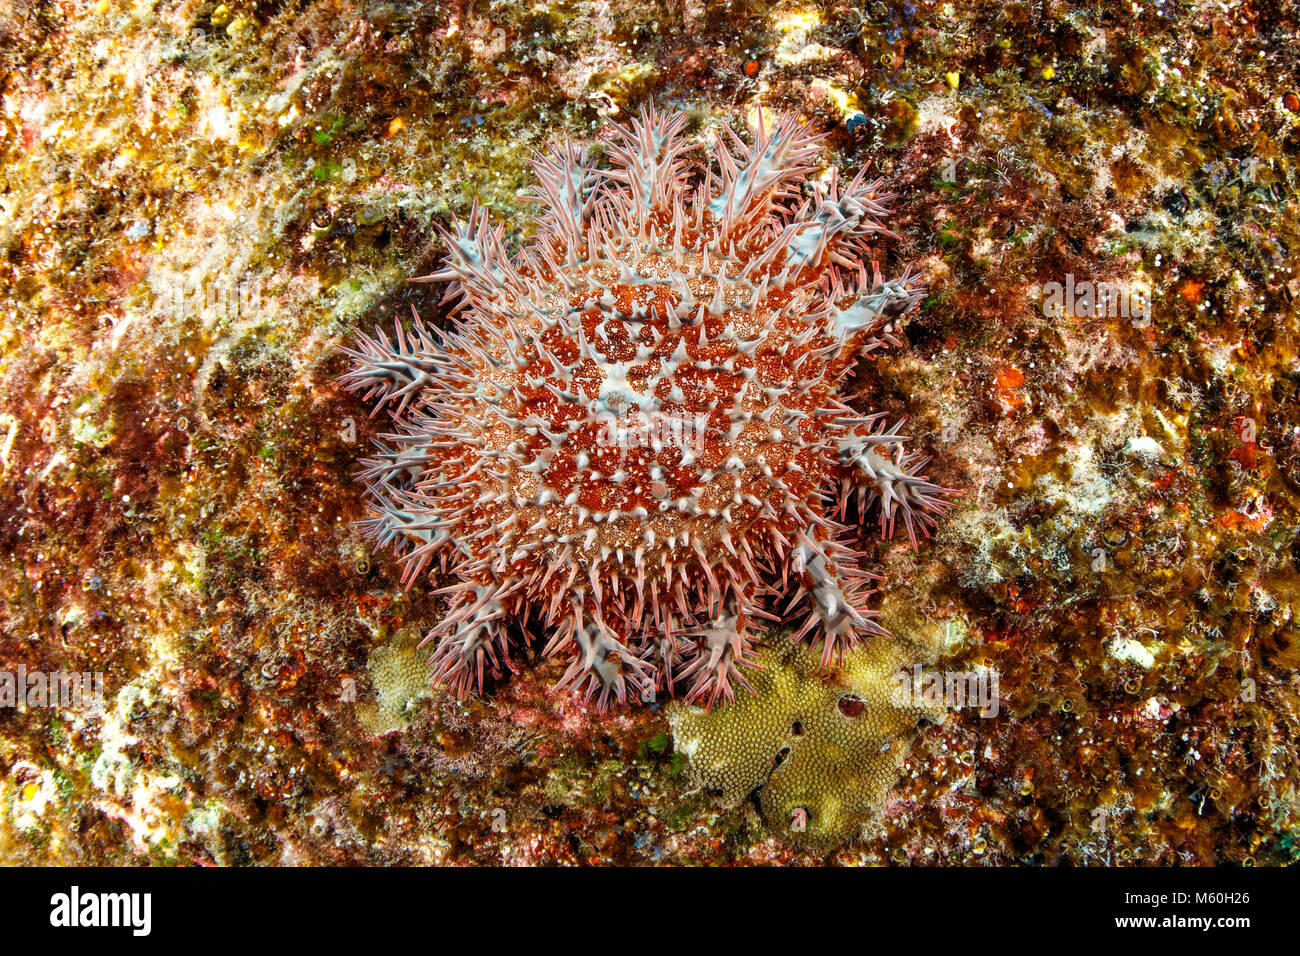 La couronne d'épines sur l'étoile de mer Acanthaster planci, récifs coralliens, l'île Socorro, Îles Revillagigedo, Mexique Banque D'Images